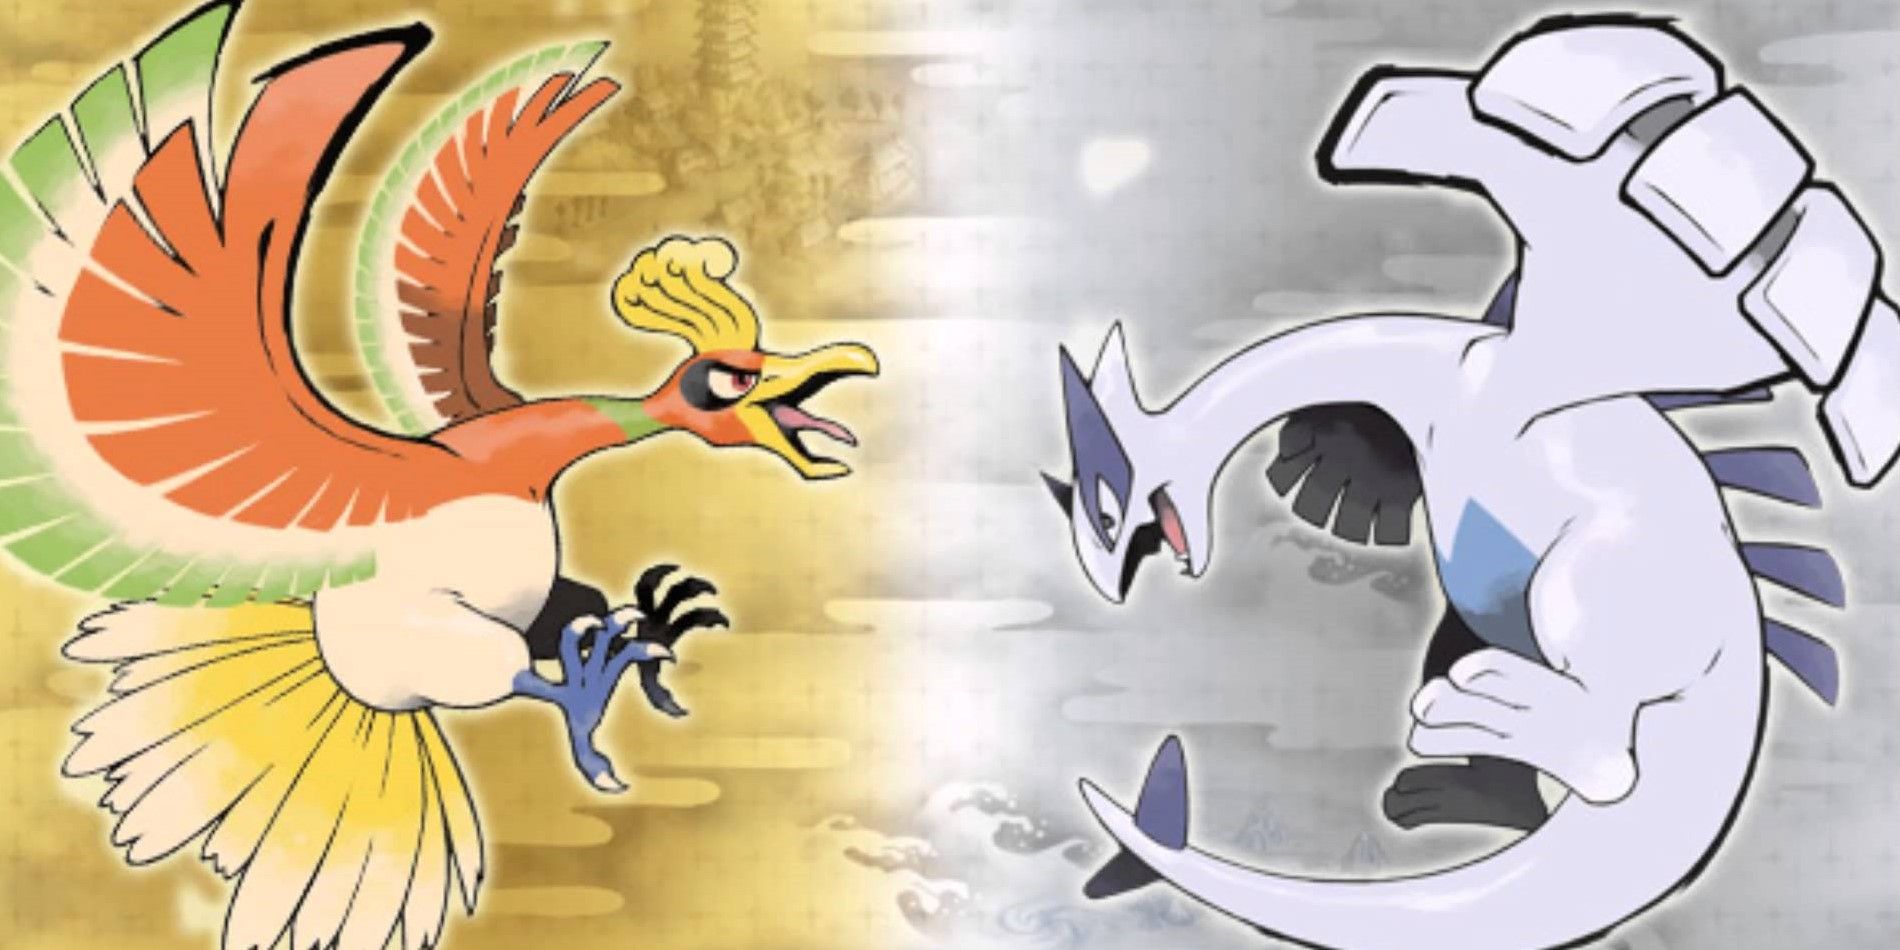 Pokémon HeartGold/SoulSilver Set the Bar for Pokémon Remakes